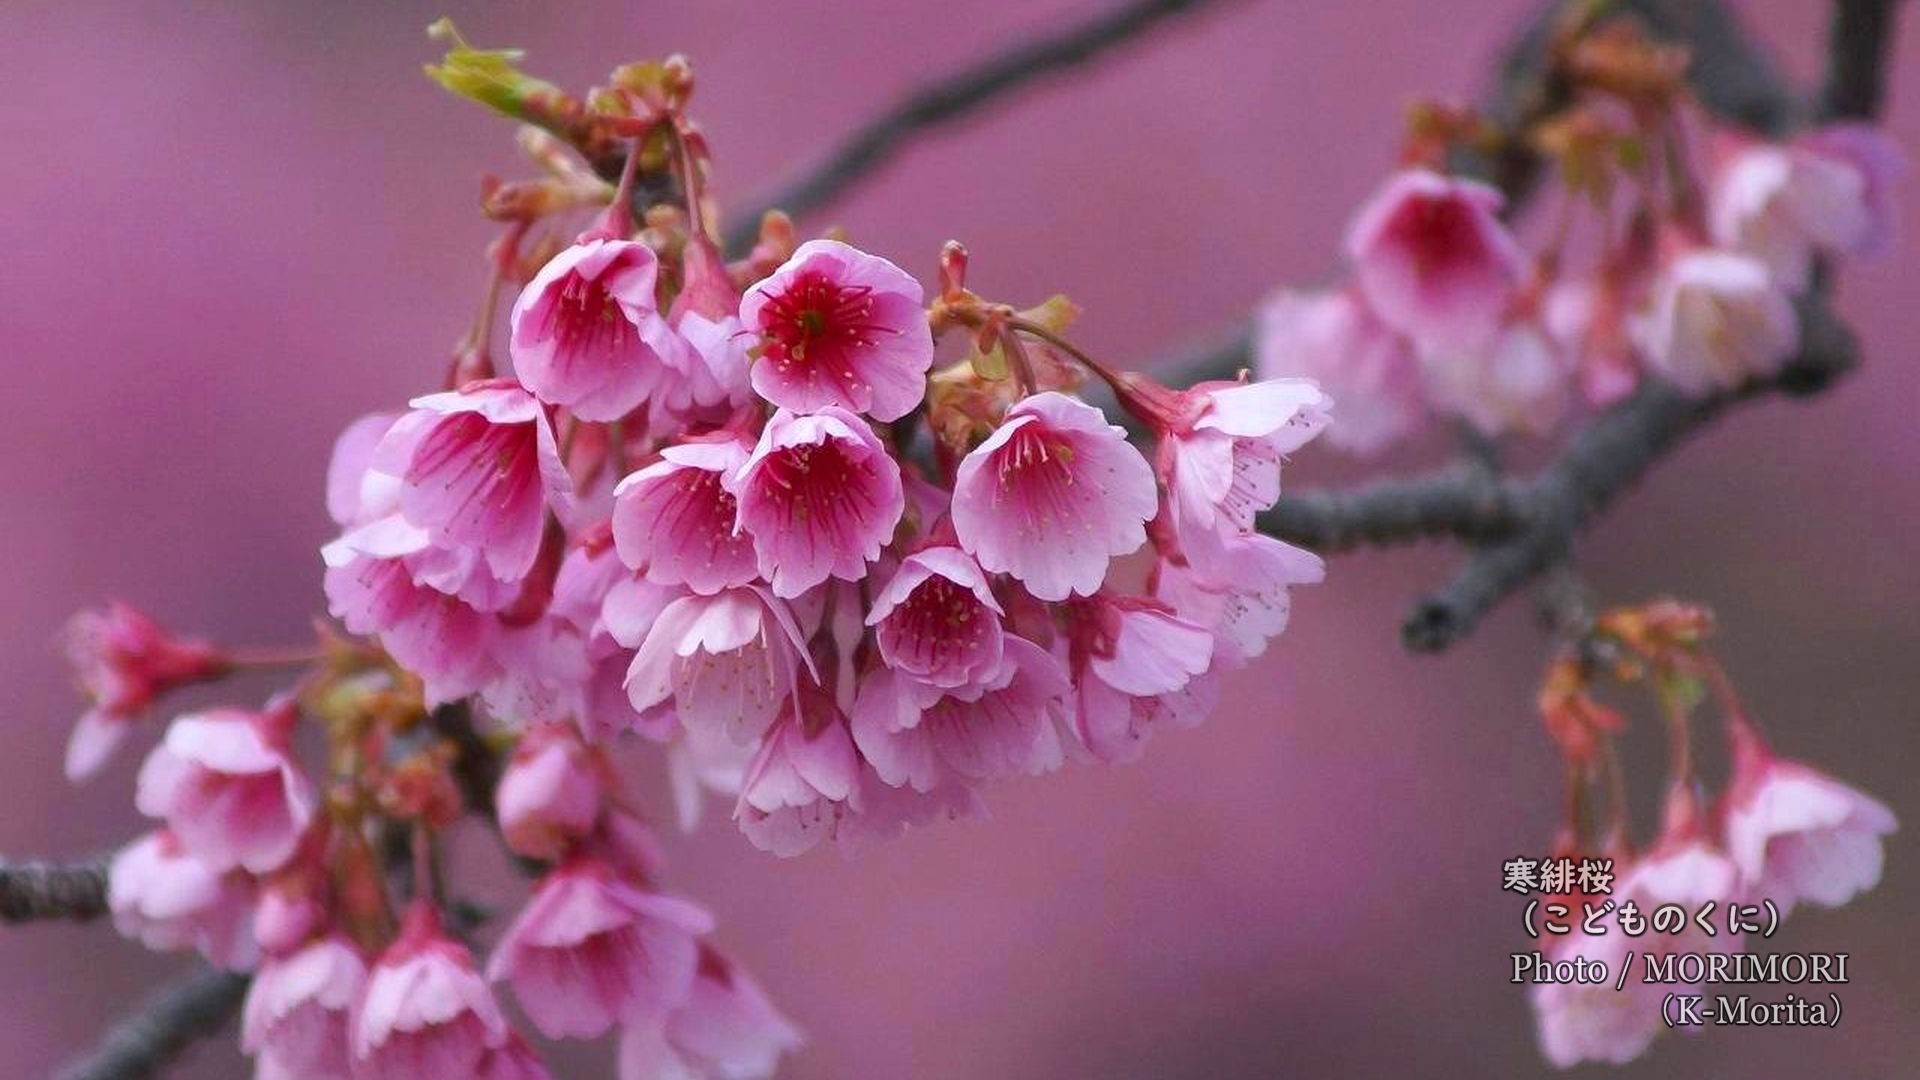 寒緋桜 カンヒザクラ とメジロ ヒヨドリの写真 宮崎市 こどものくに